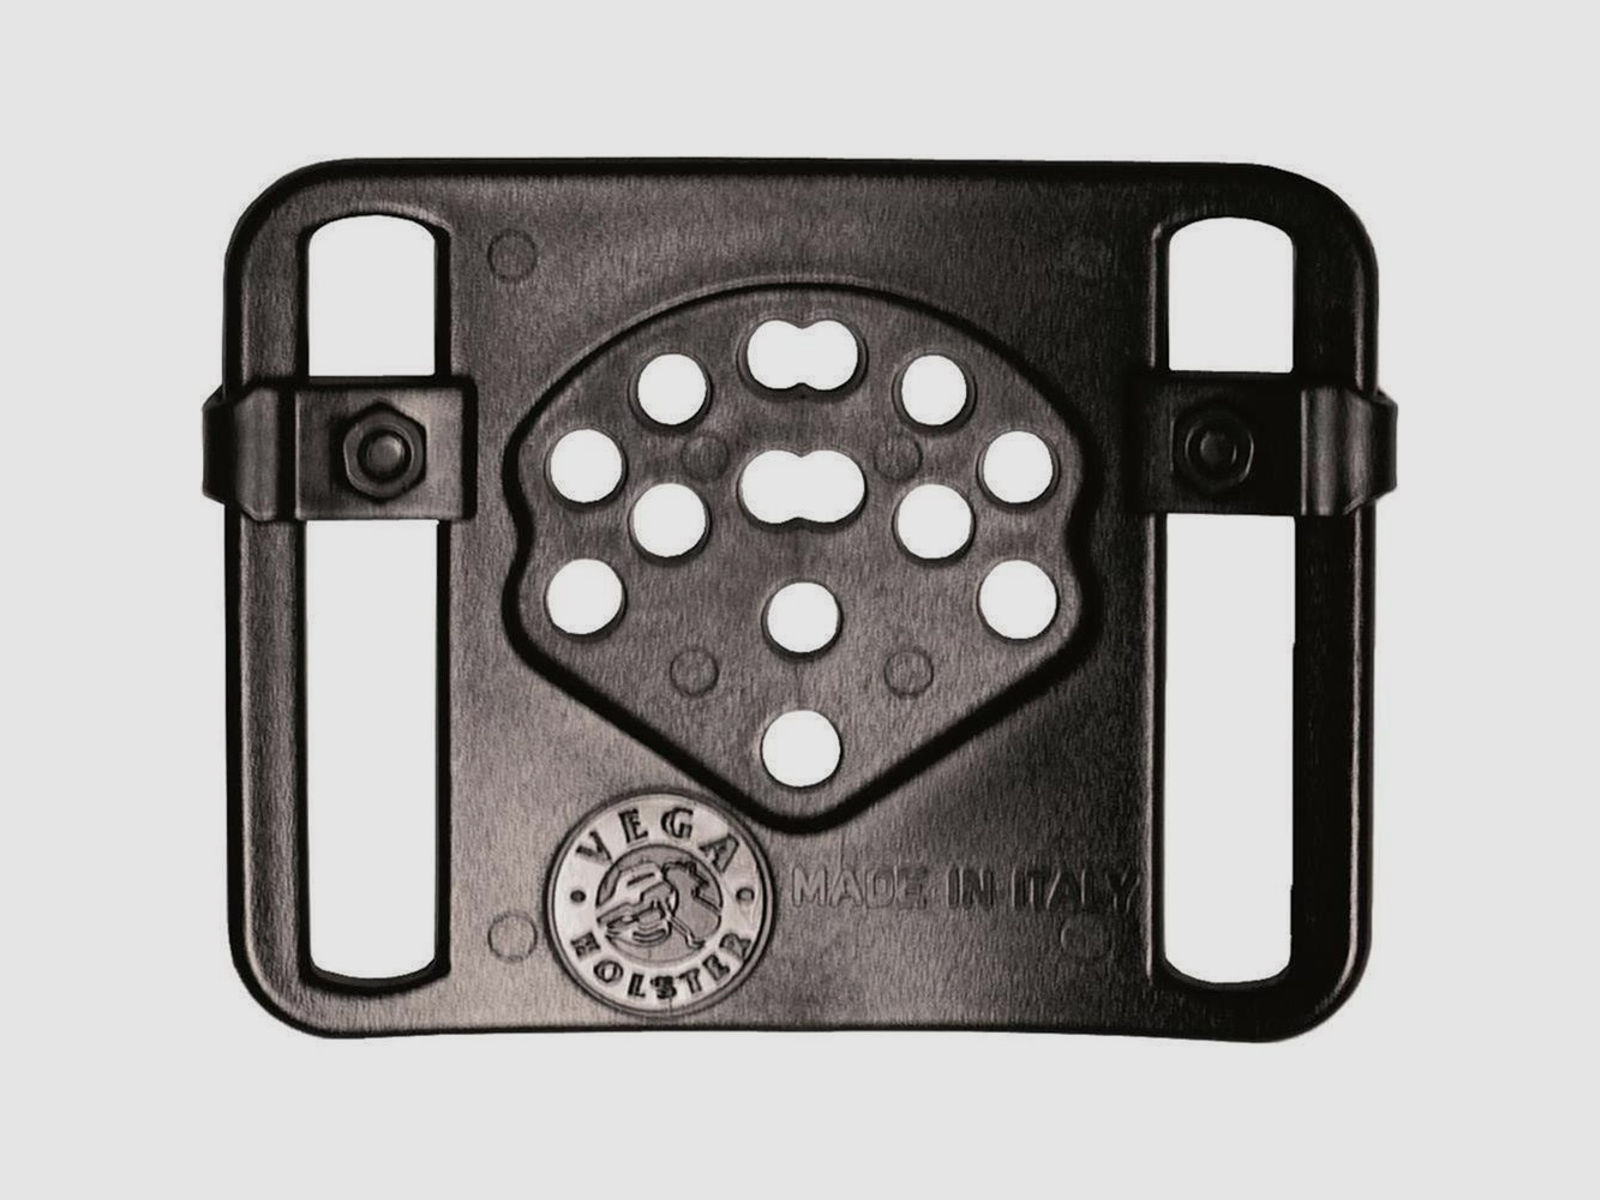 Polymerholster “RESCUE” mit Sicherung Walther P99 Rechtshänder